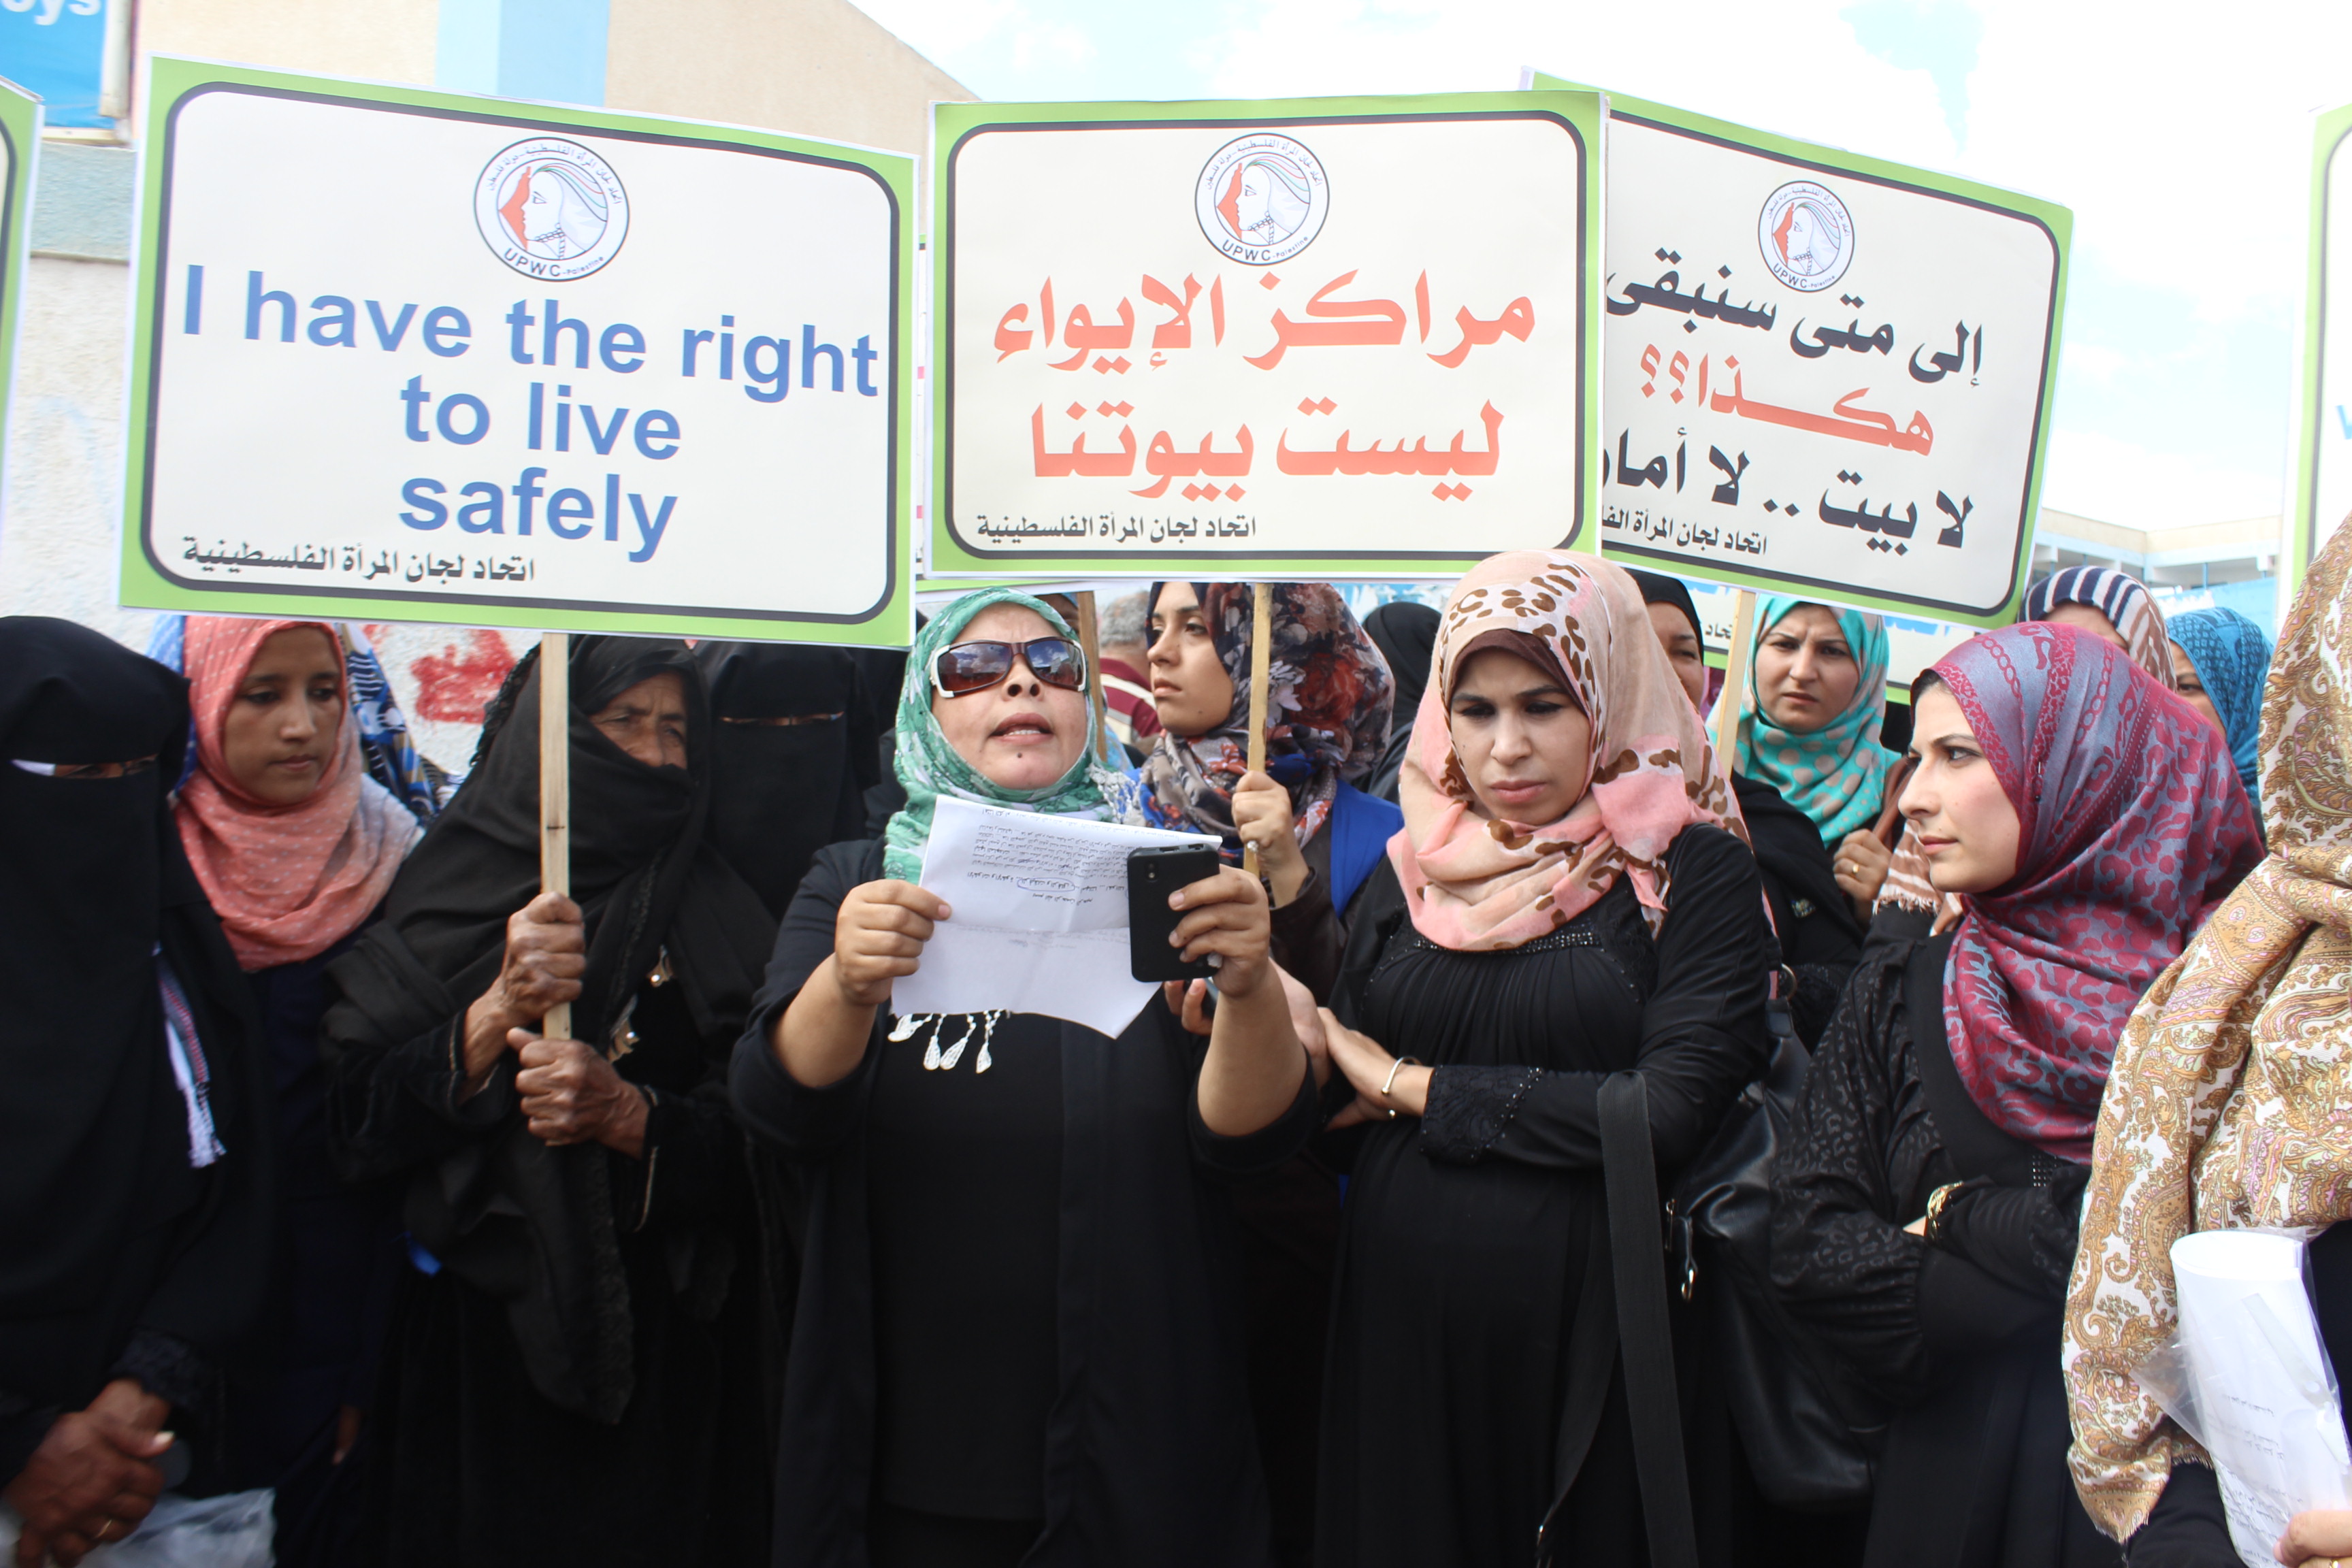 في وقفة تضامنية اتحاد لجان المرأة الفلسطينية يشدد على أهمية الإسراع بالإعمار وأن لا يرتبط بأي مصلحة سياسية